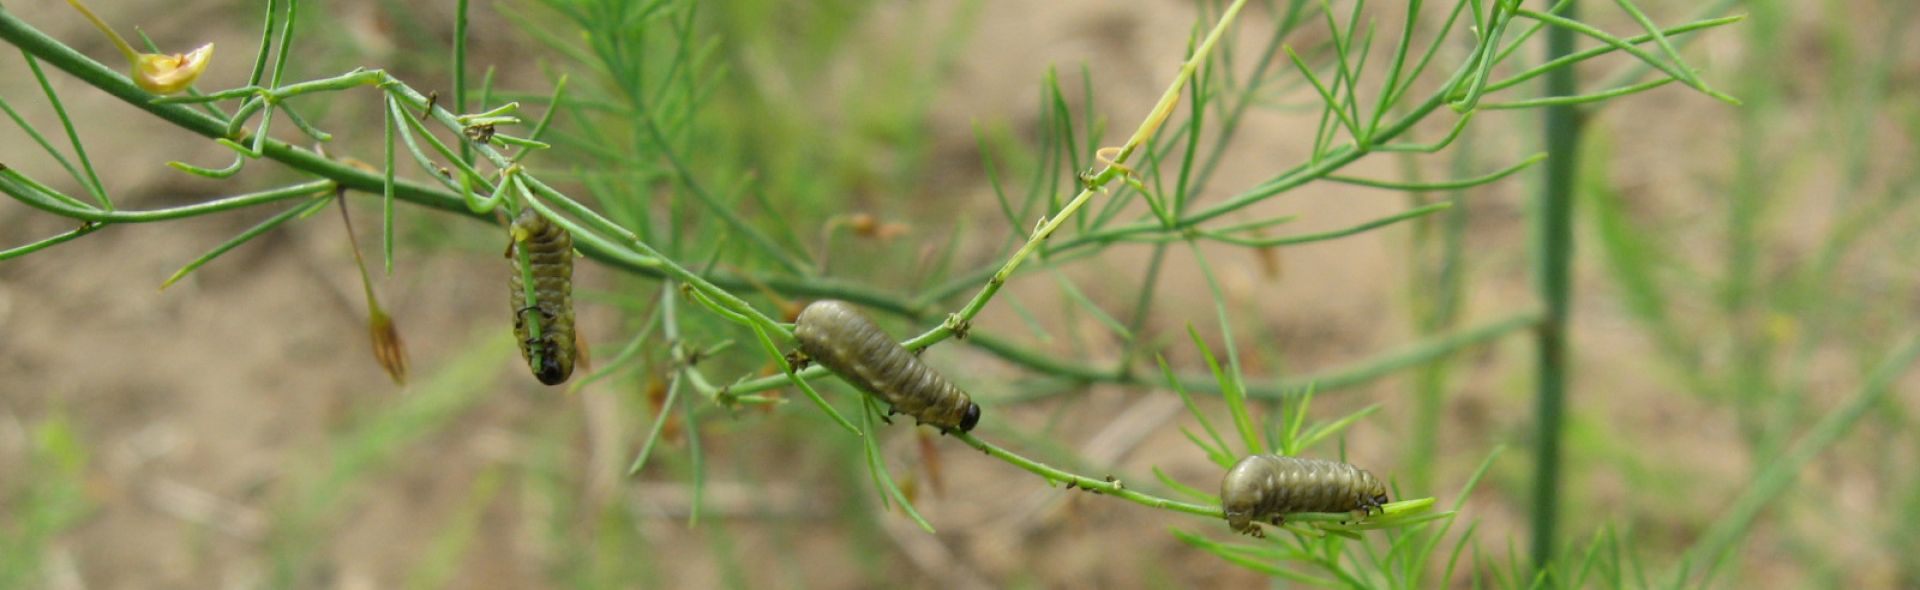 Asparagus beetle larvae